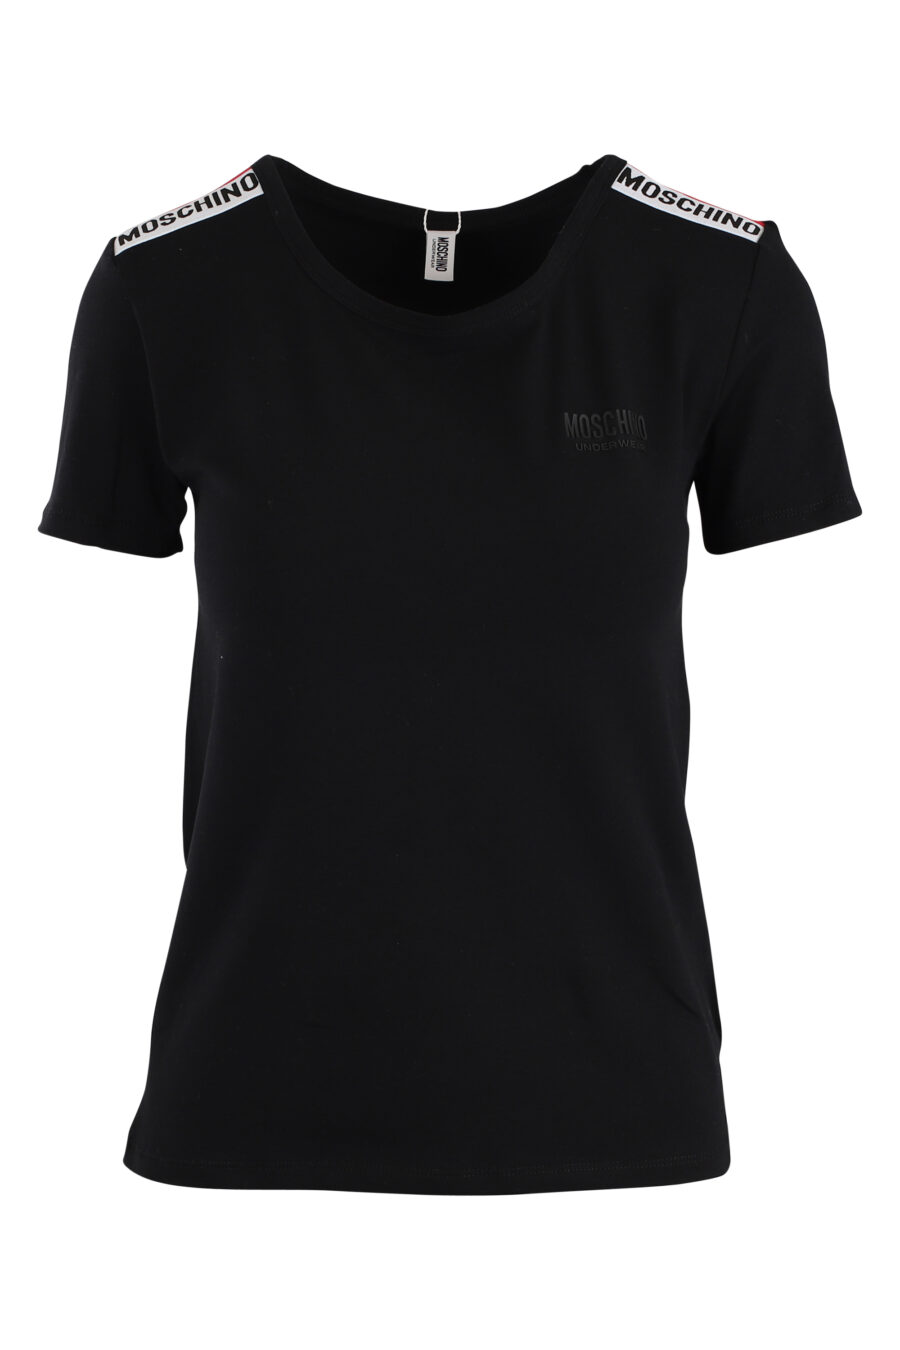 Camiseta negra con logo en cinta en mangas - IMG 5516